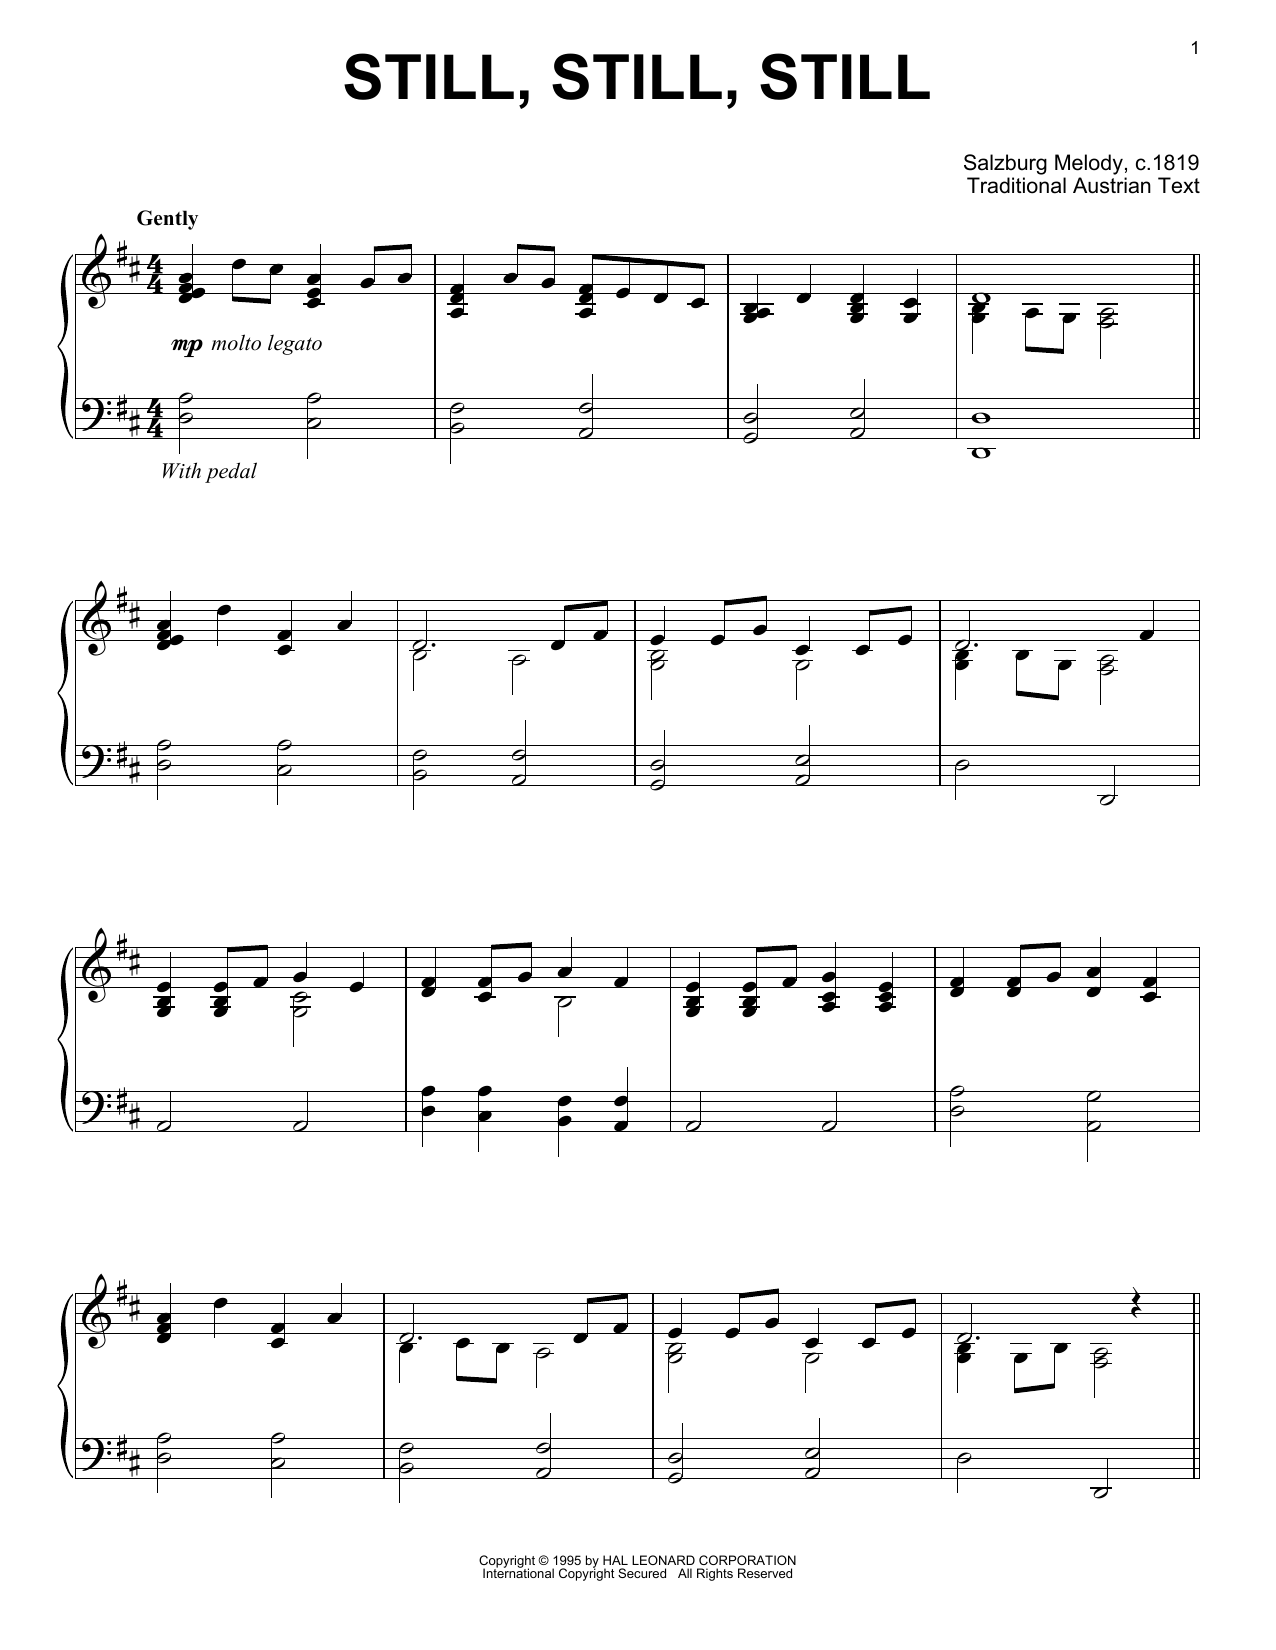 Traditional Austrian Text Still, Still, Still sheet music notes and chords arranged for Violin Duet